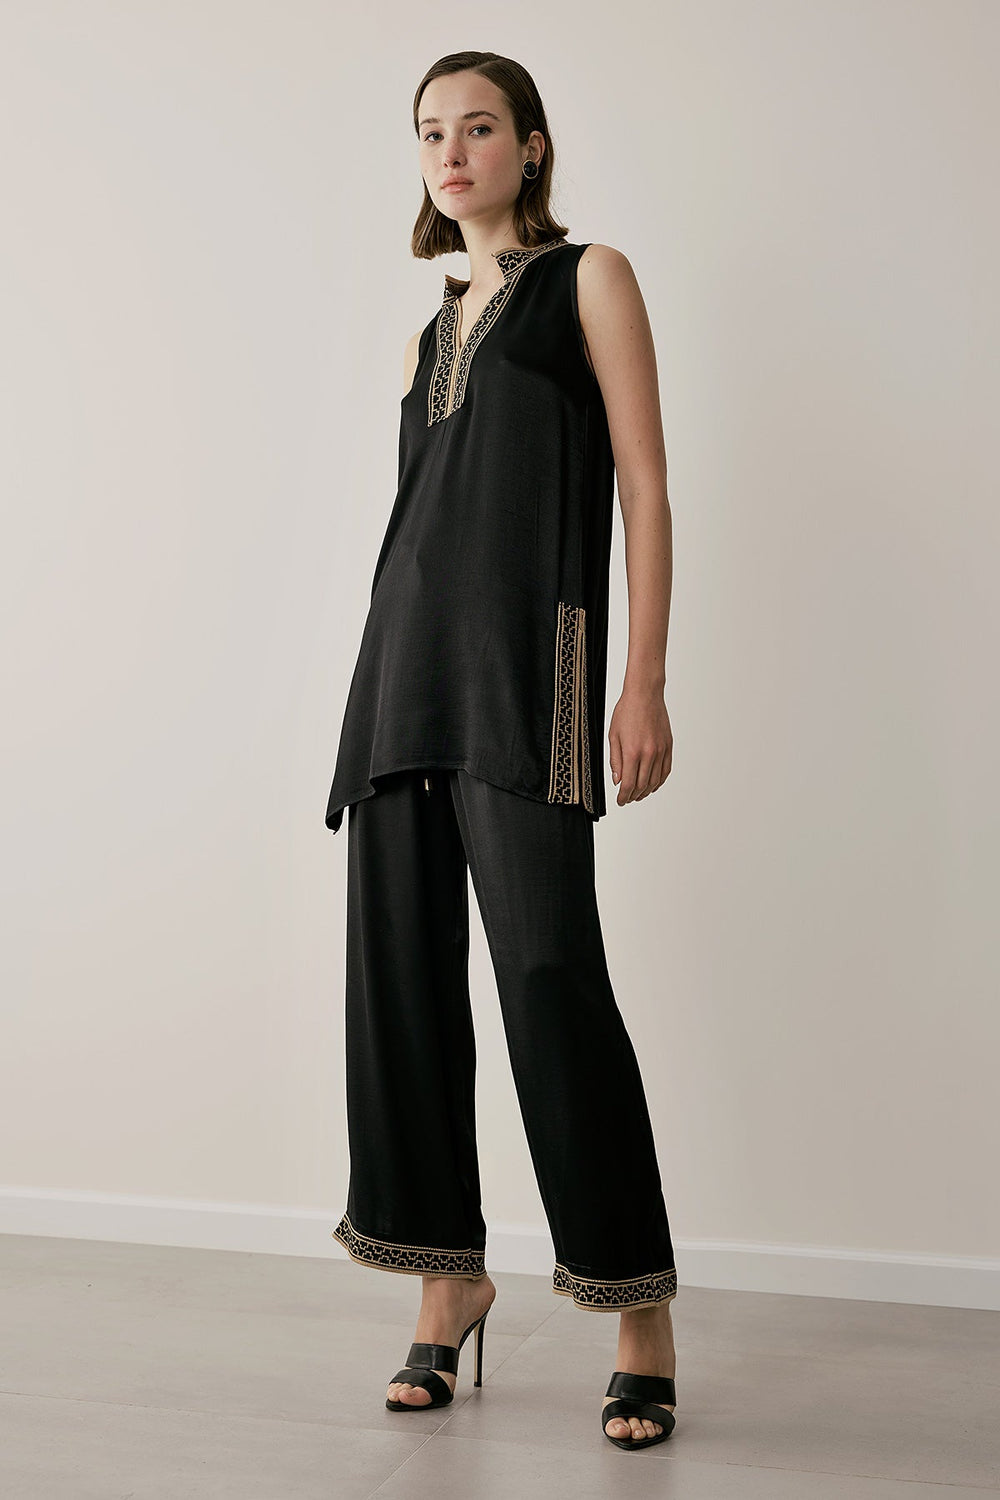 Σετ μπλούζα παντελόνα με πλεκτές λεπτομέρειες Figaro Fashion - A Collection Boutique